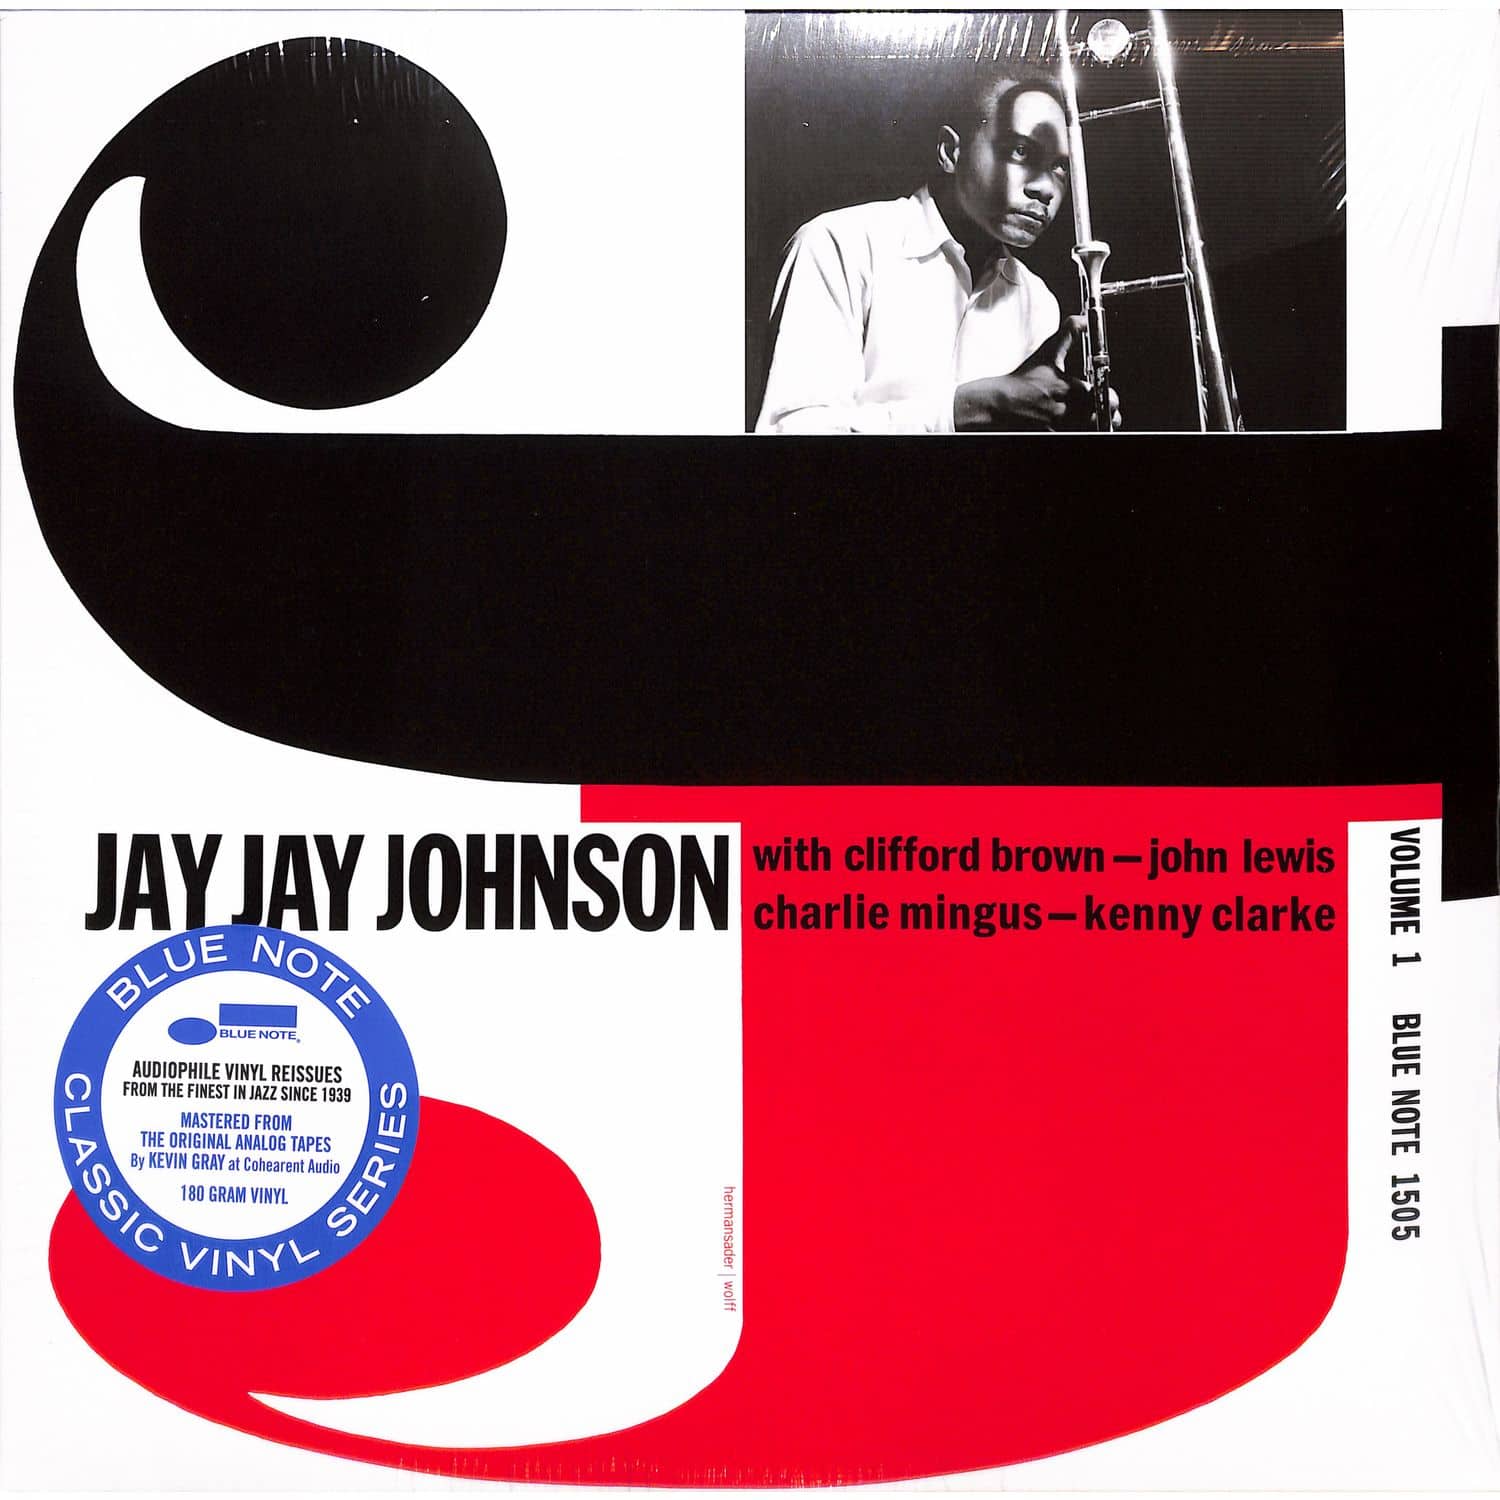  Jay Jay Johnson - THE EMINENT JAY JAY JOHNSON, VOL.1 